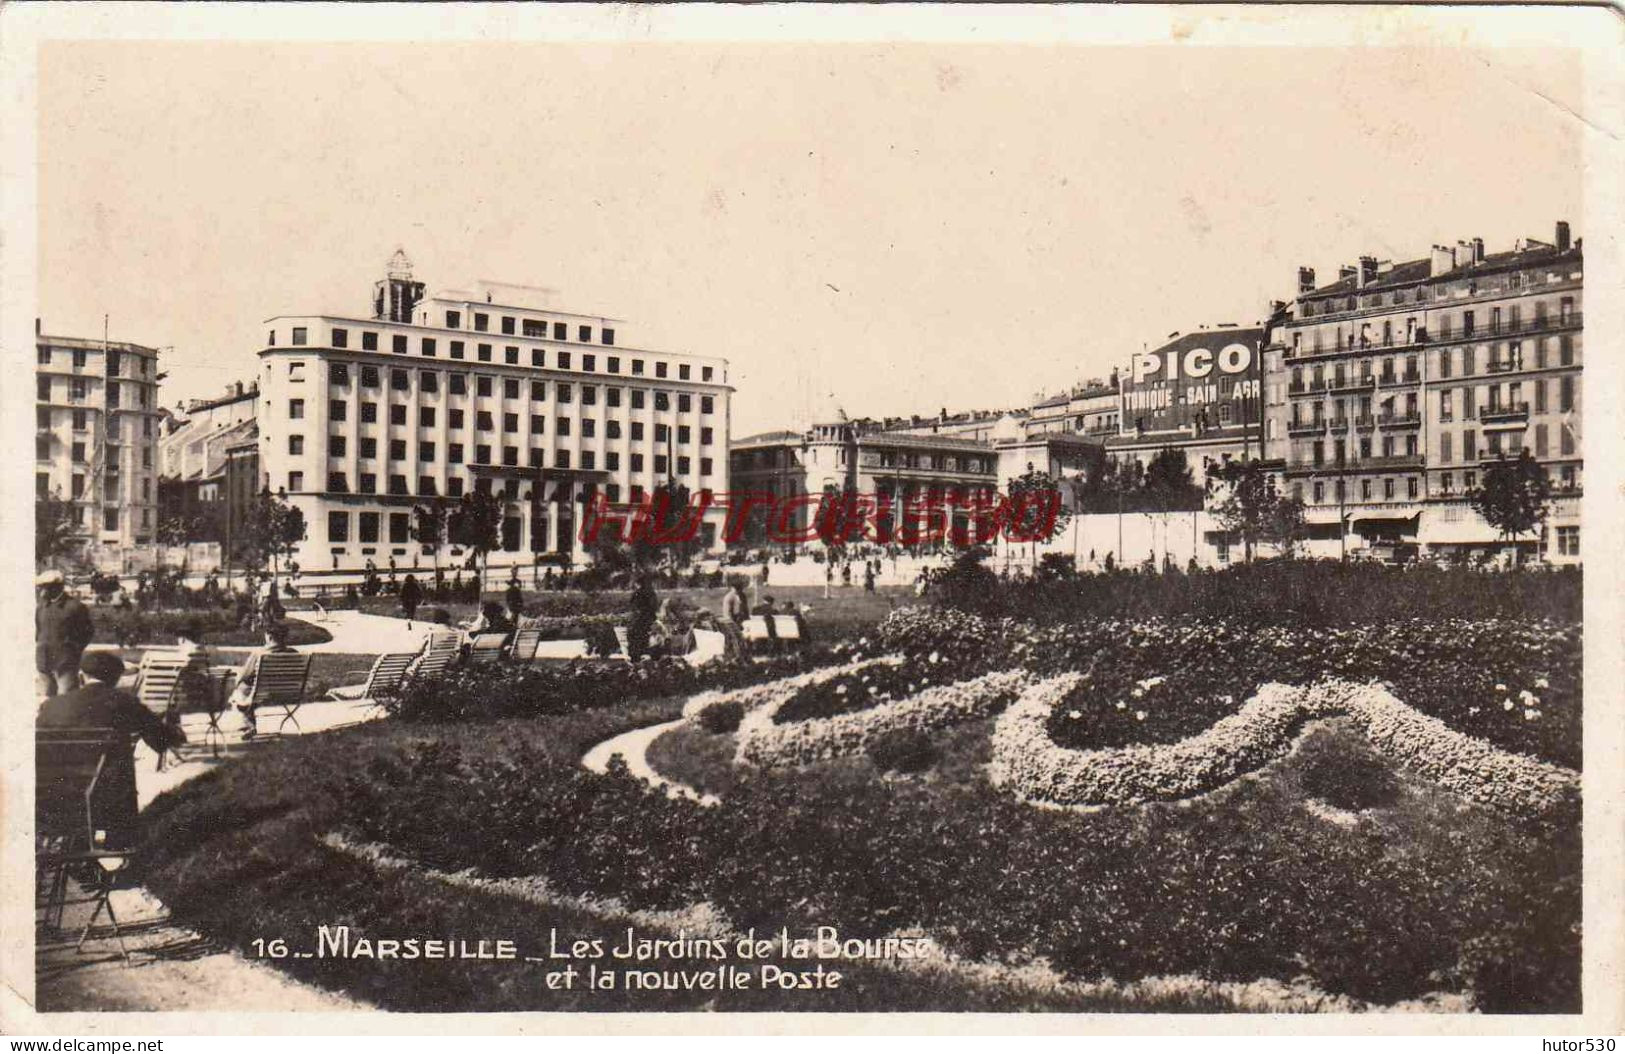 CPSM MARSEILLE - LES JARDINS DE LA BOURSE ET LA NOUVELLE POSTE - The Canebière, City Centre